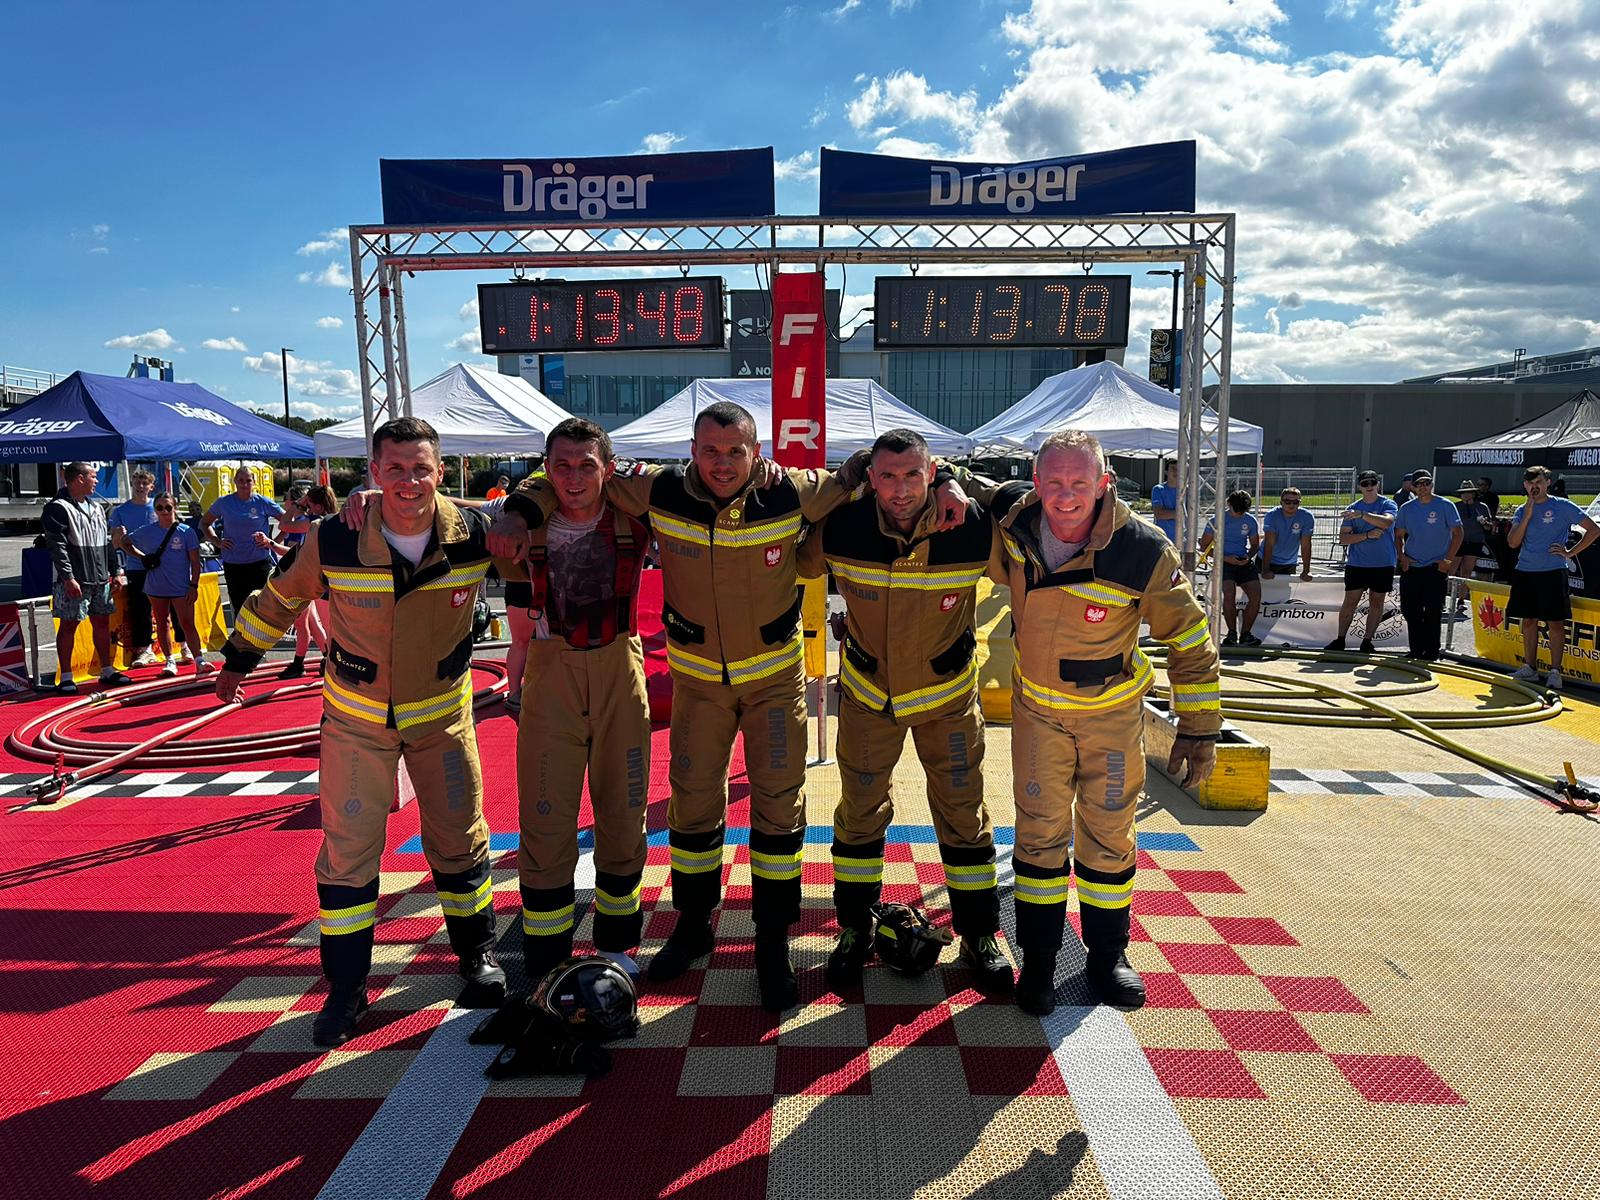 5 zawodników w mundurach strażackich trzyma się za zramiona, w tle tablica sportowa z wysiwetlonymi wynikami 1:13.48 i 1.13.78